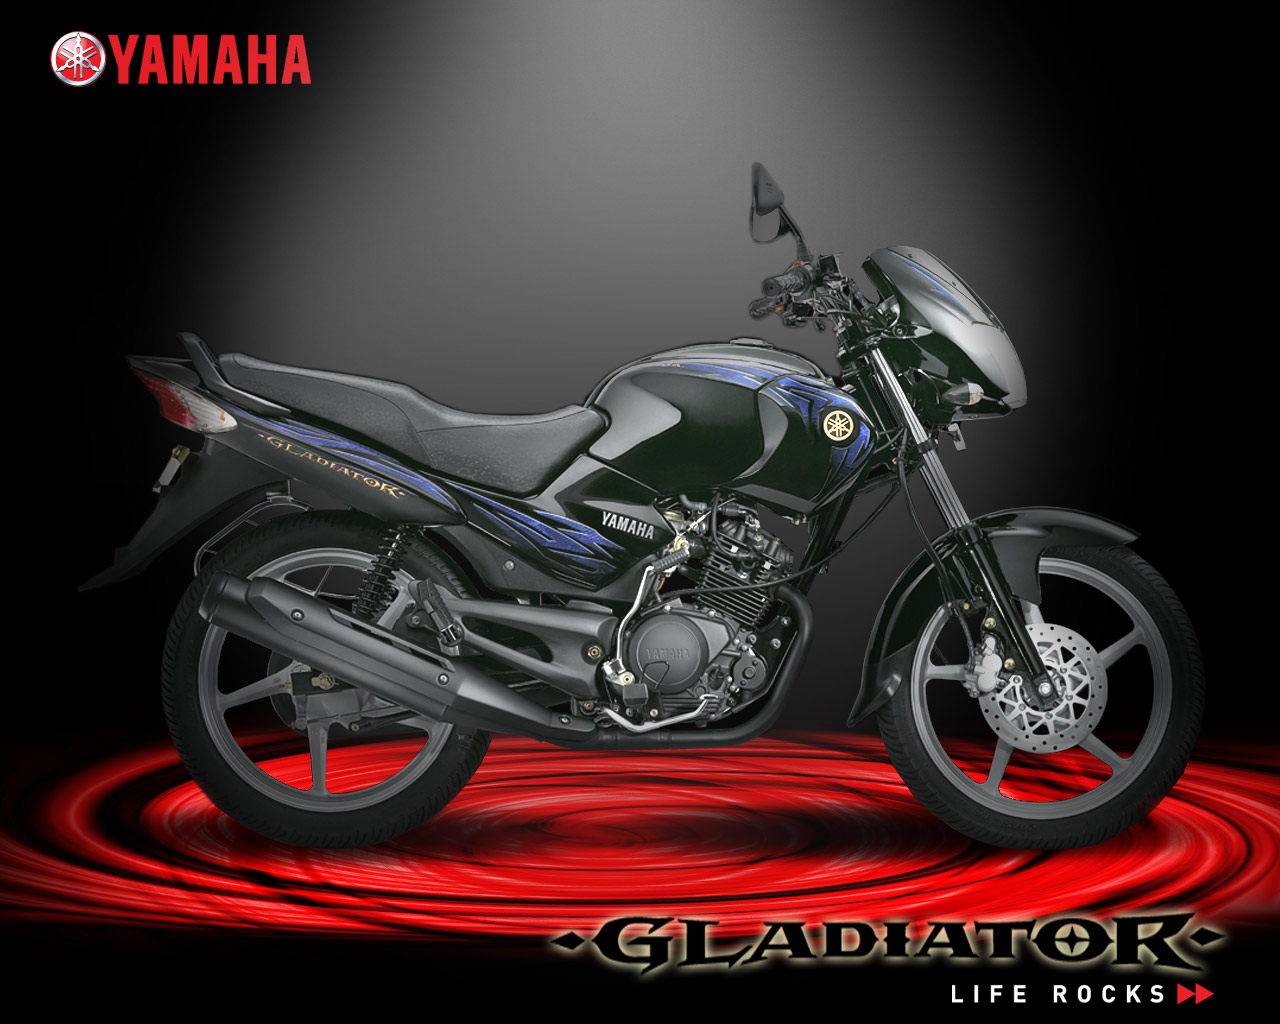 Yamaha Gladiator